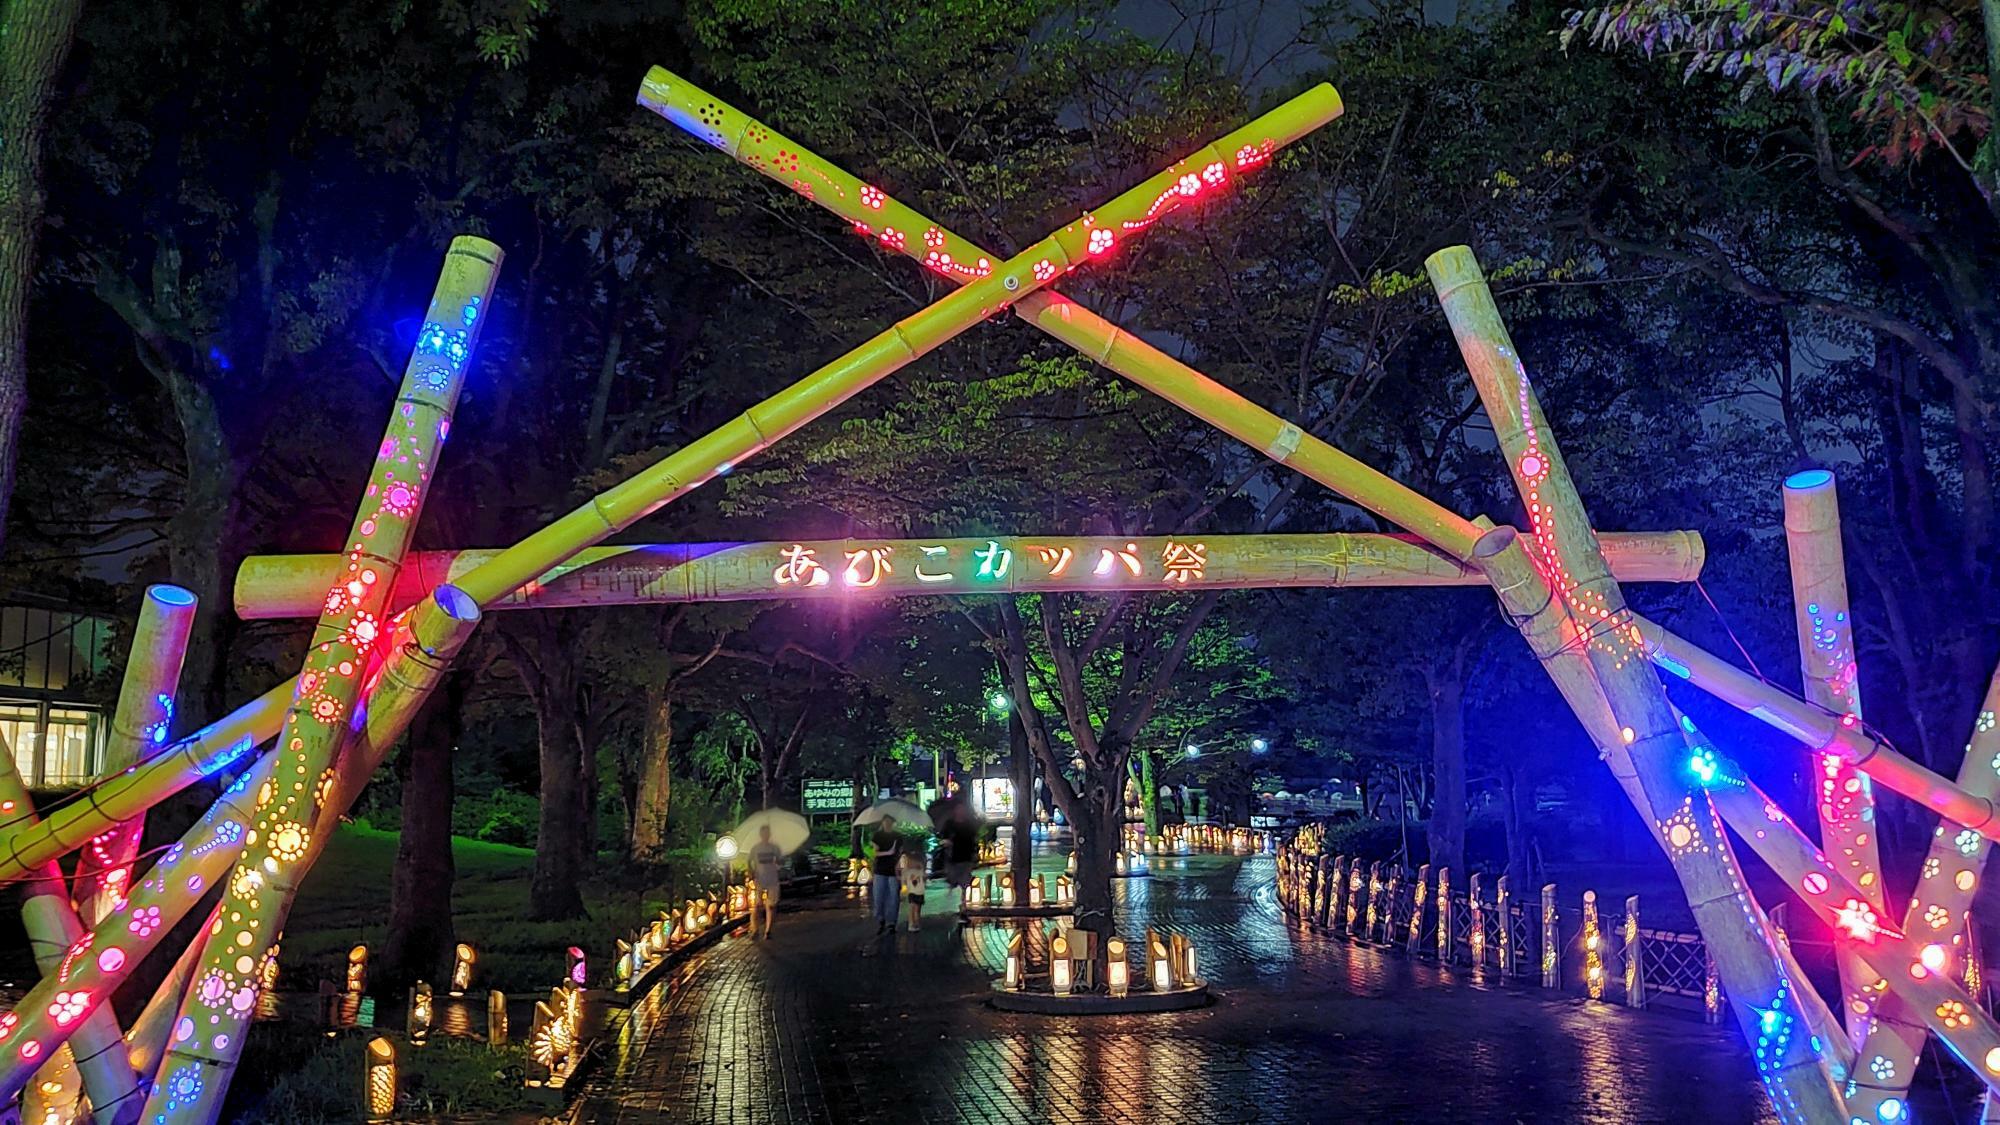 手賀沼公園入り口にある、竹灯籠の門